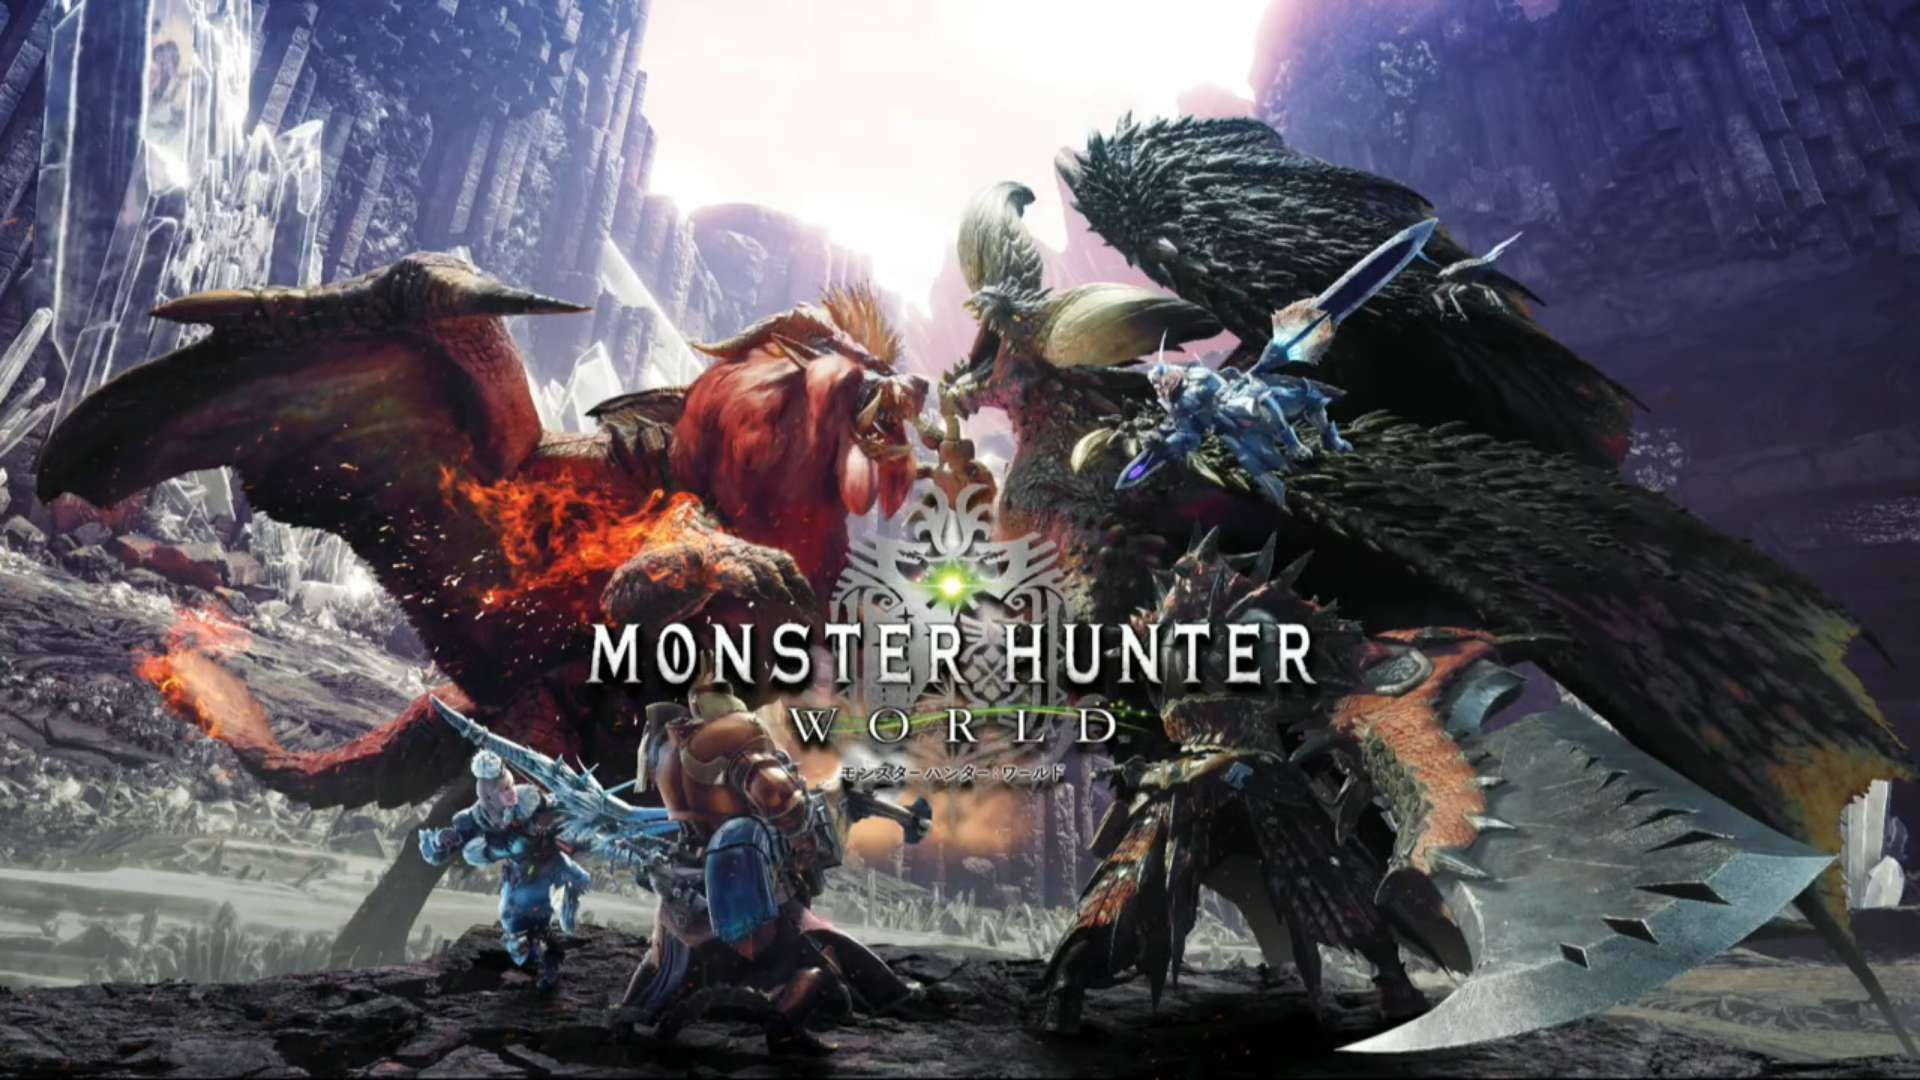 Monster Hunter World Wallpapers